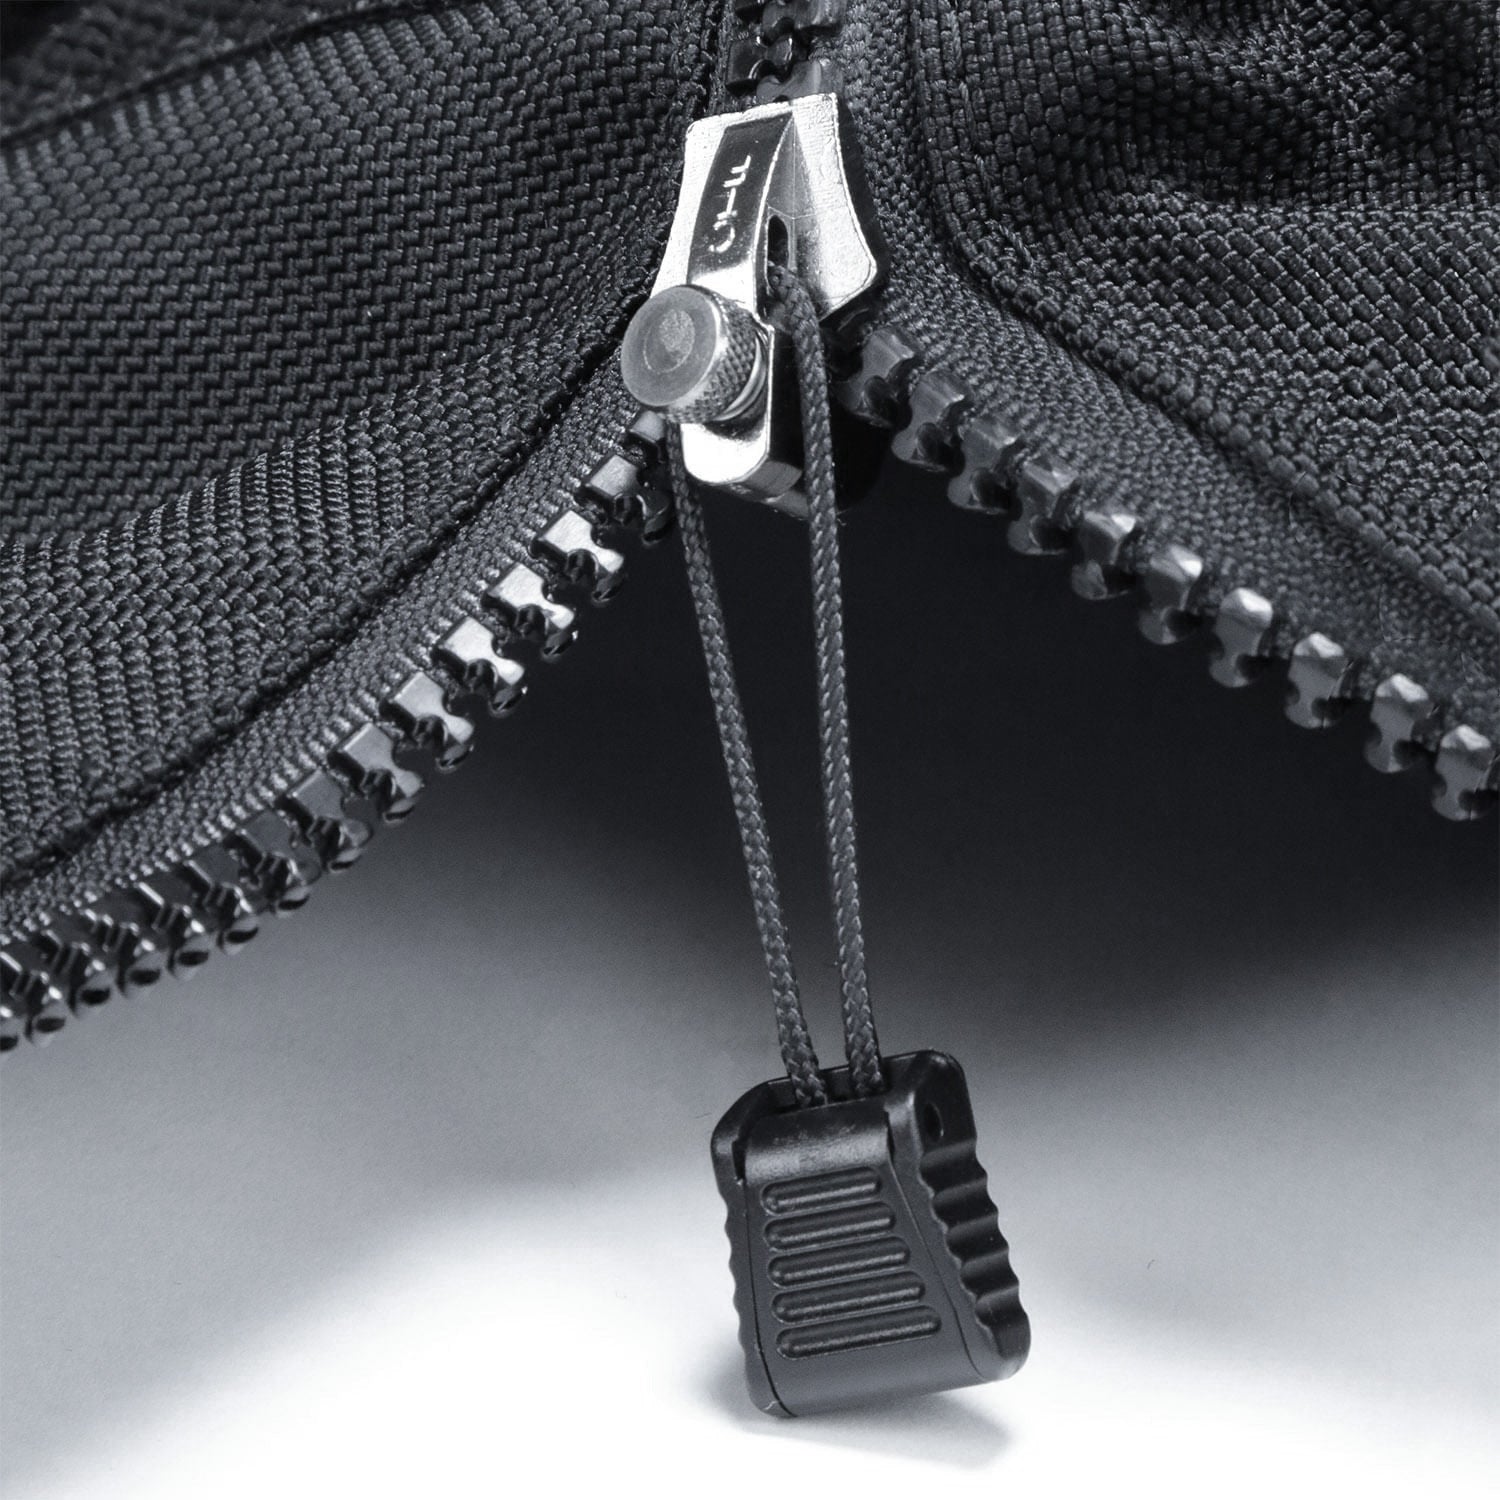 Fixnzip replacement zipper slider New